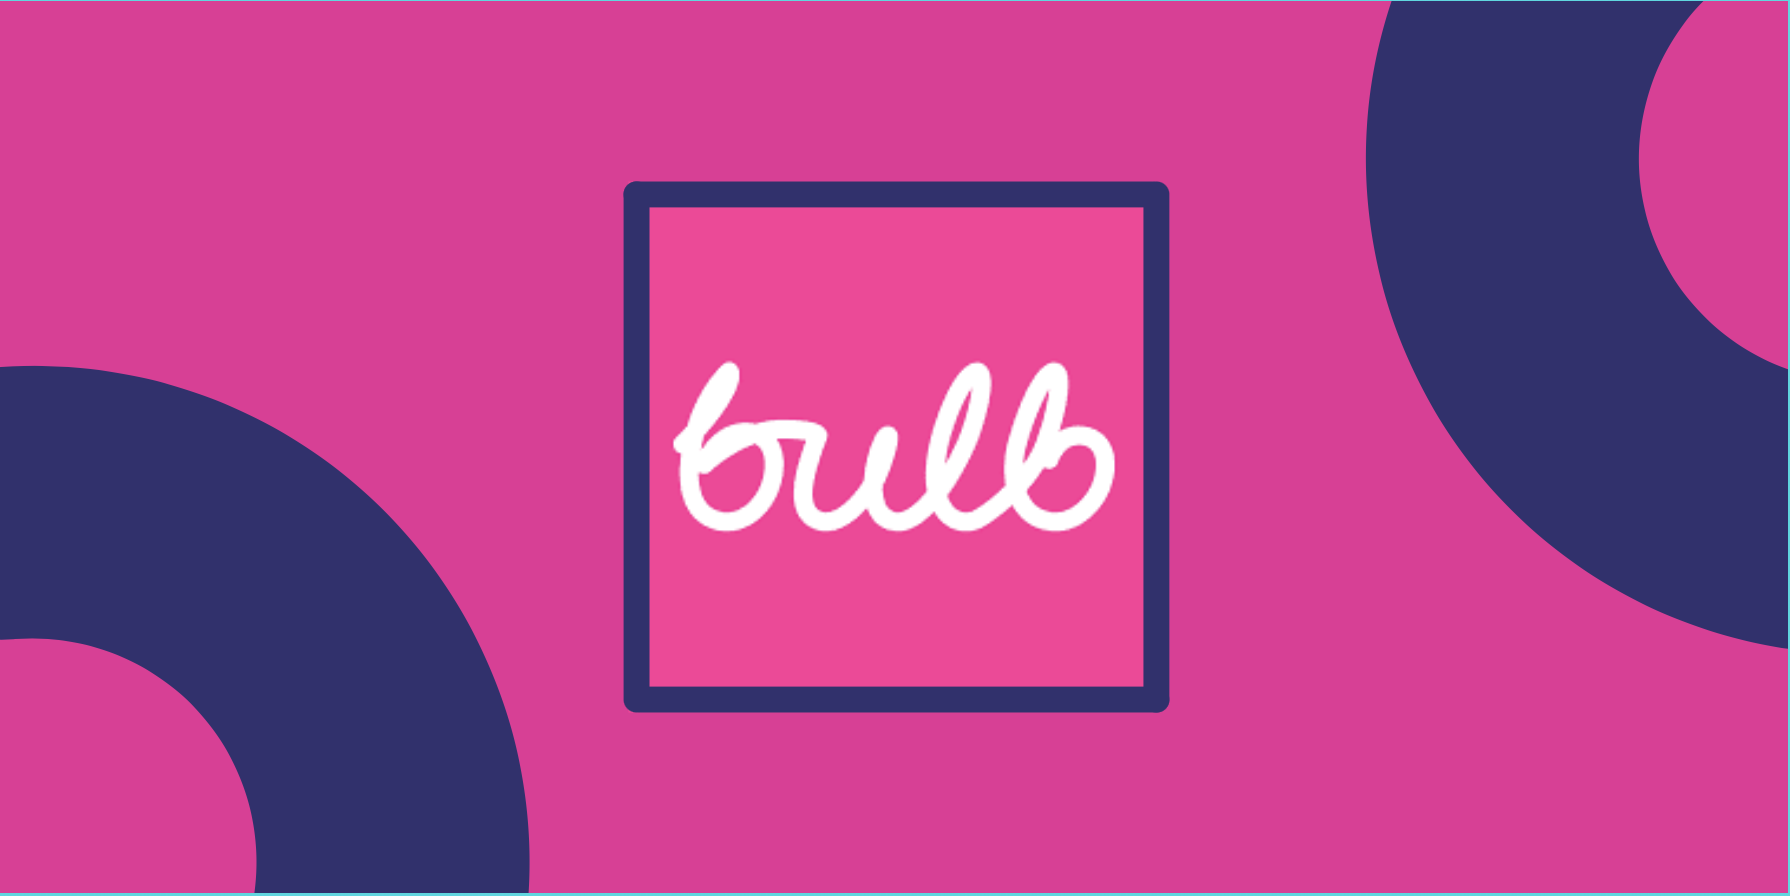 Bulb est un fournisseur d'électricité d'origine britannique